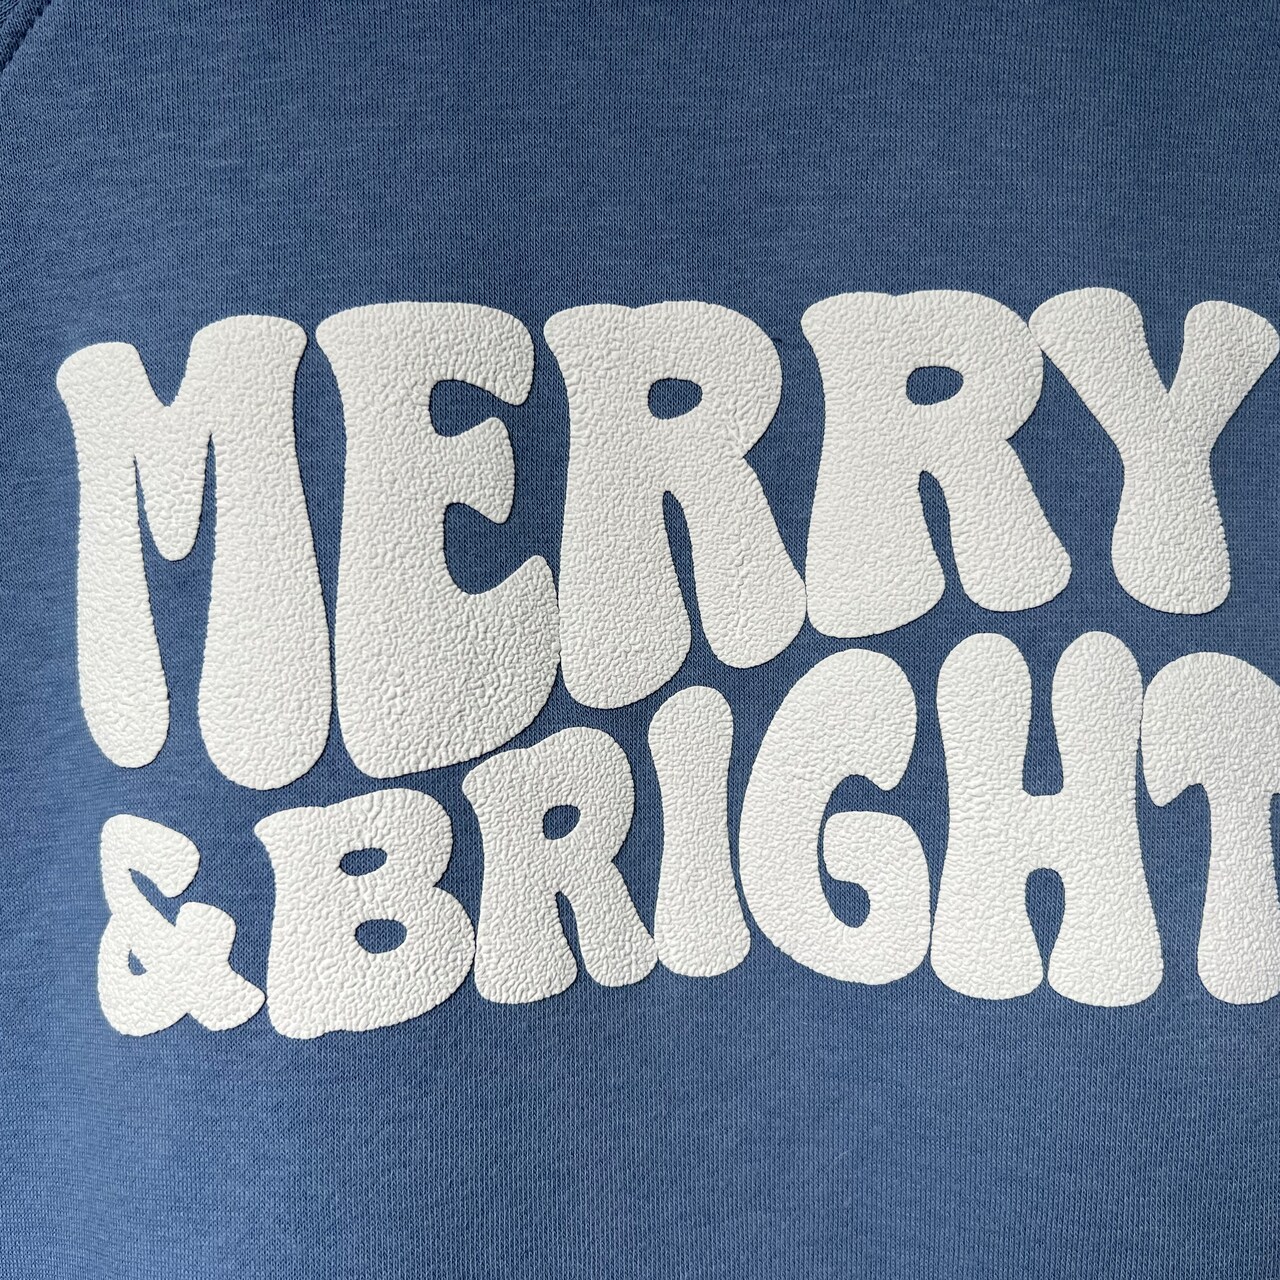 Make Matching Holiday Sweatshirts with any Cutting Machine